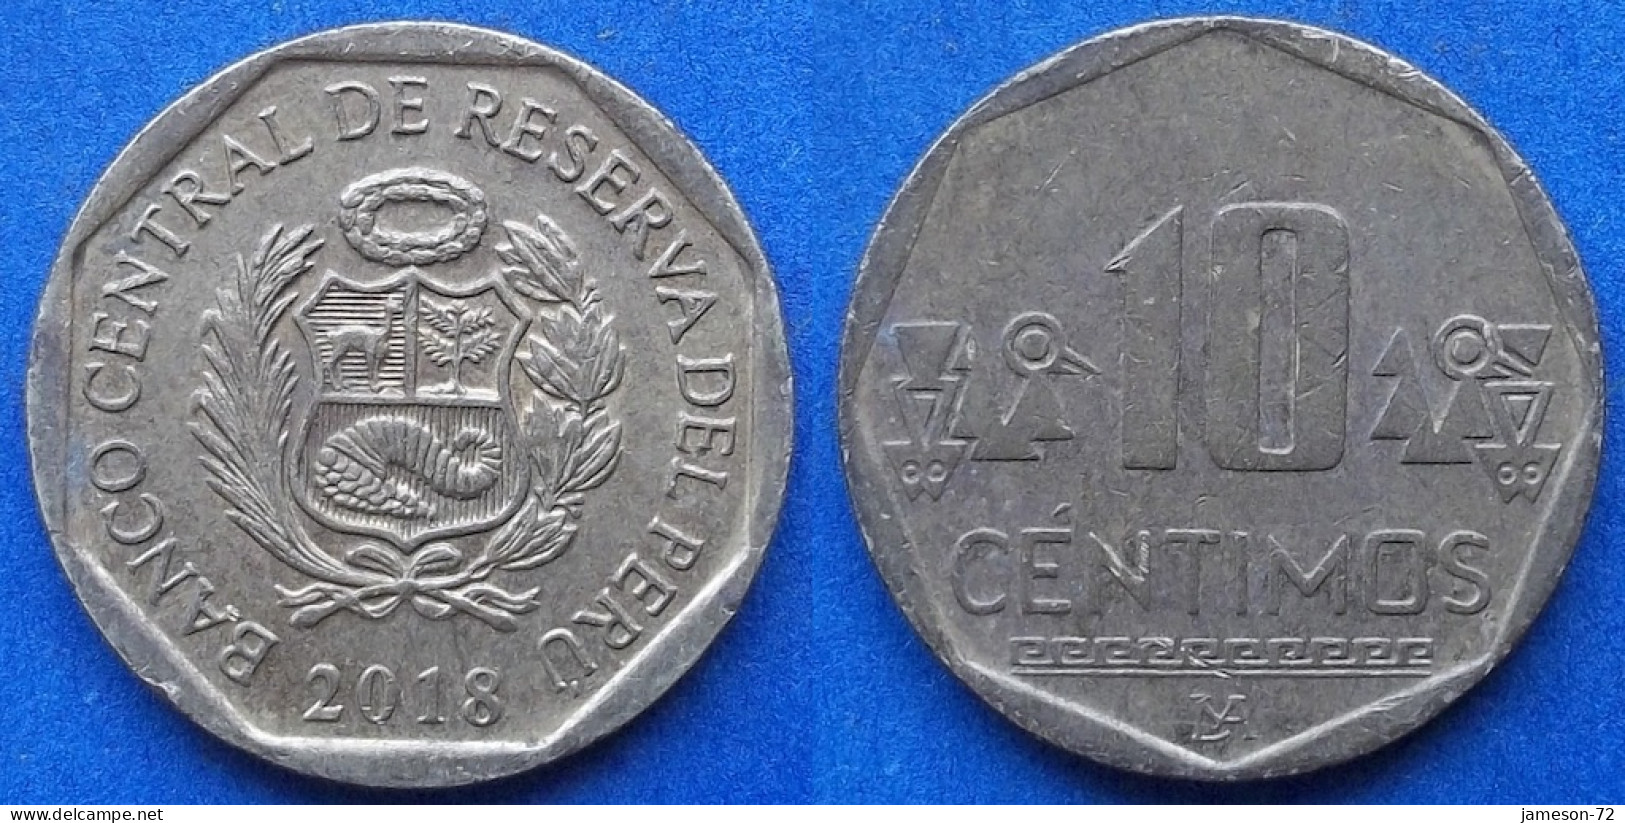 PERU - 10 Centimos 2018 KM# 305.4 Monetary Reform (1991) - Edelweiss Coins - Peru